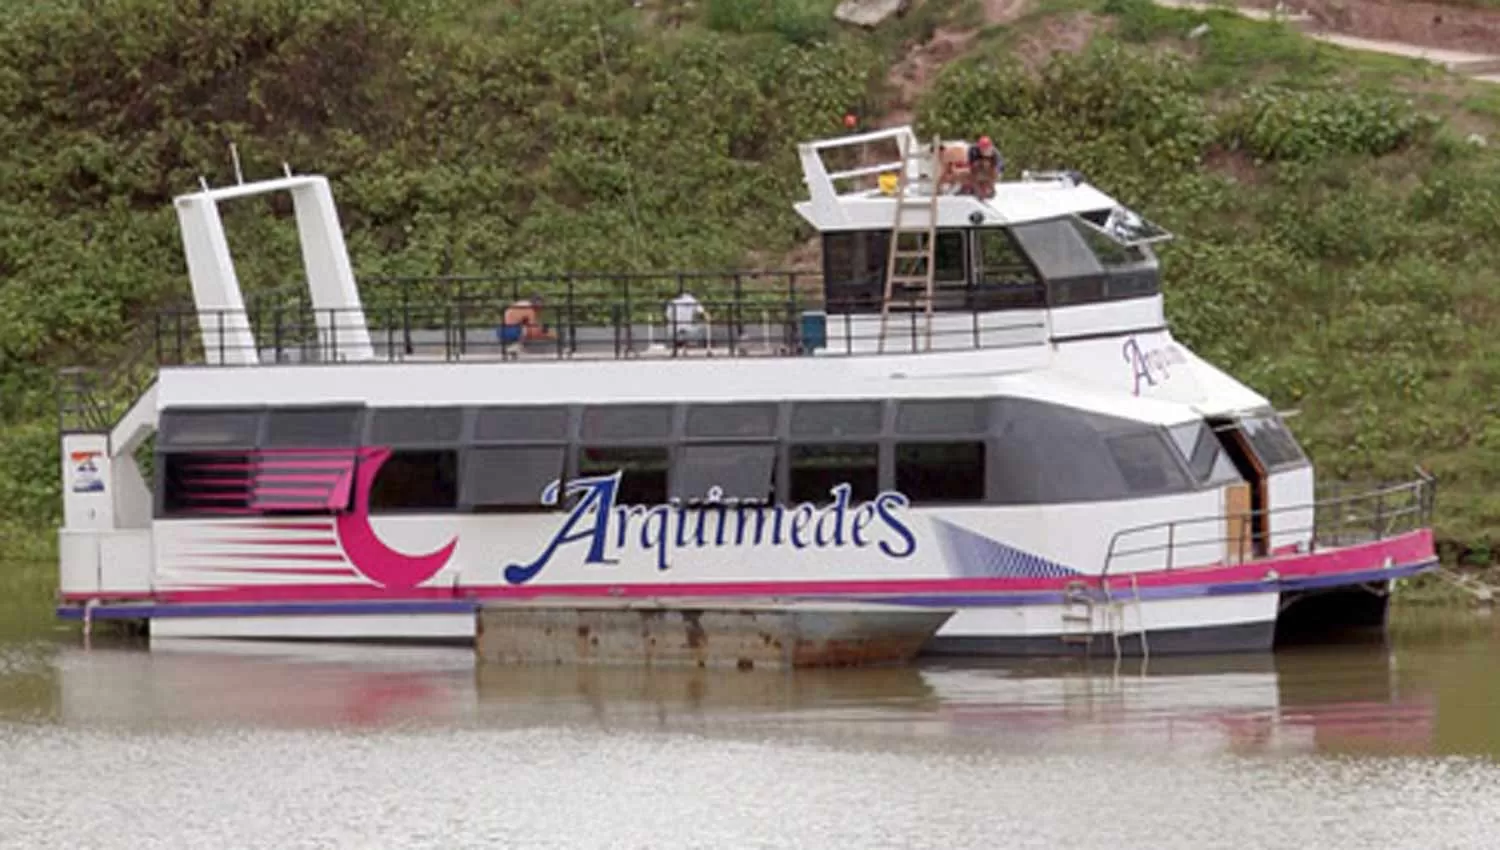 MODELO 2000. “Arquímedes”, el catamarán que funciona en El Cadillal podría ser trasladado a Villa Carlos Paz tras los casos de inseguridad que sufrió su dueño. ARCHIVO